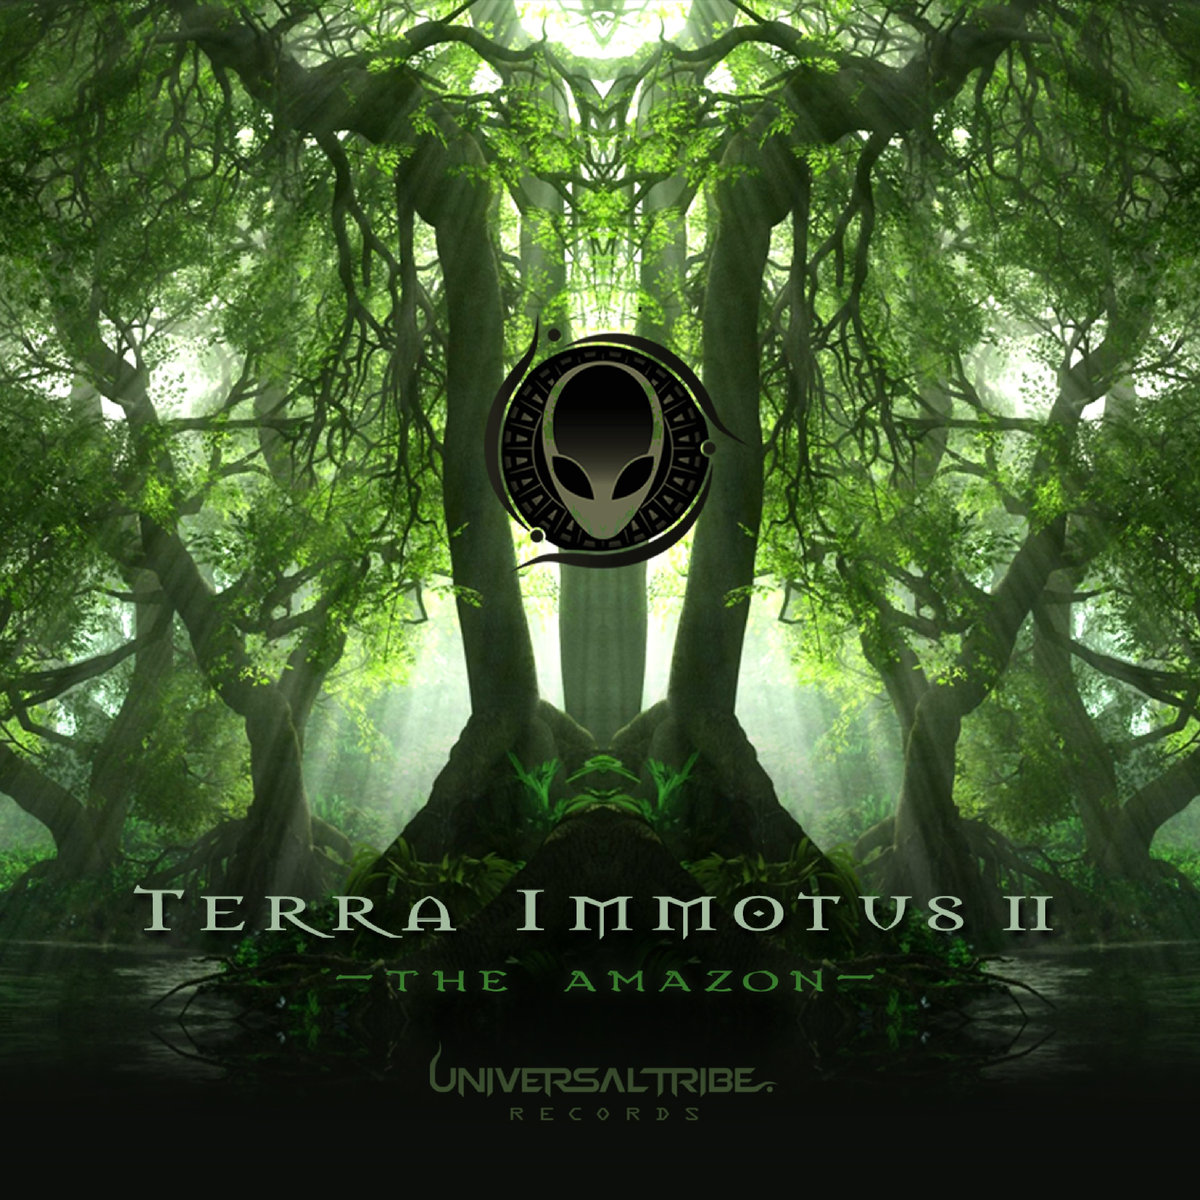 Terra Immotus II: The Amazon